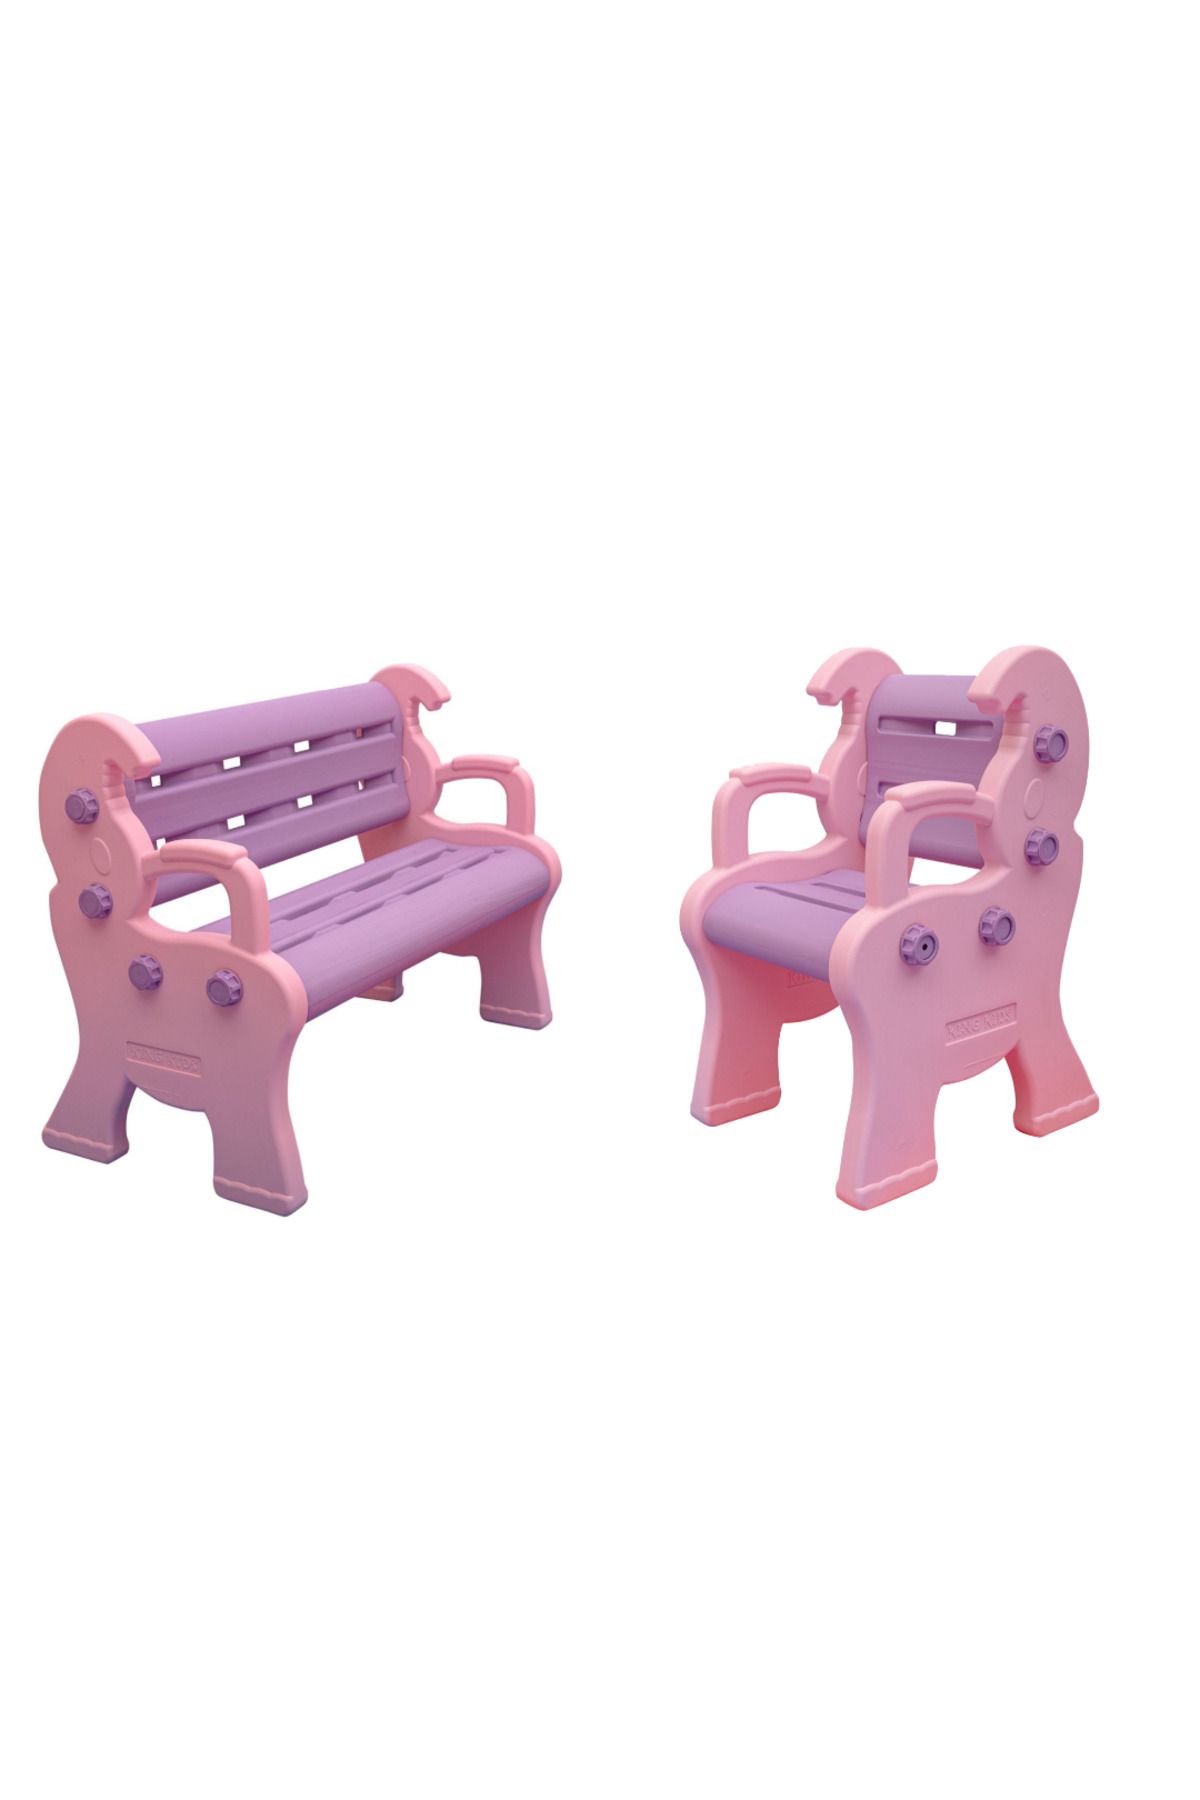 ÇIRAK Çocuk Sandalye - Bank Set - Anaokulu - Kreş Çocuk Bank - Renkli Koltuk - Oturak - Sandalye